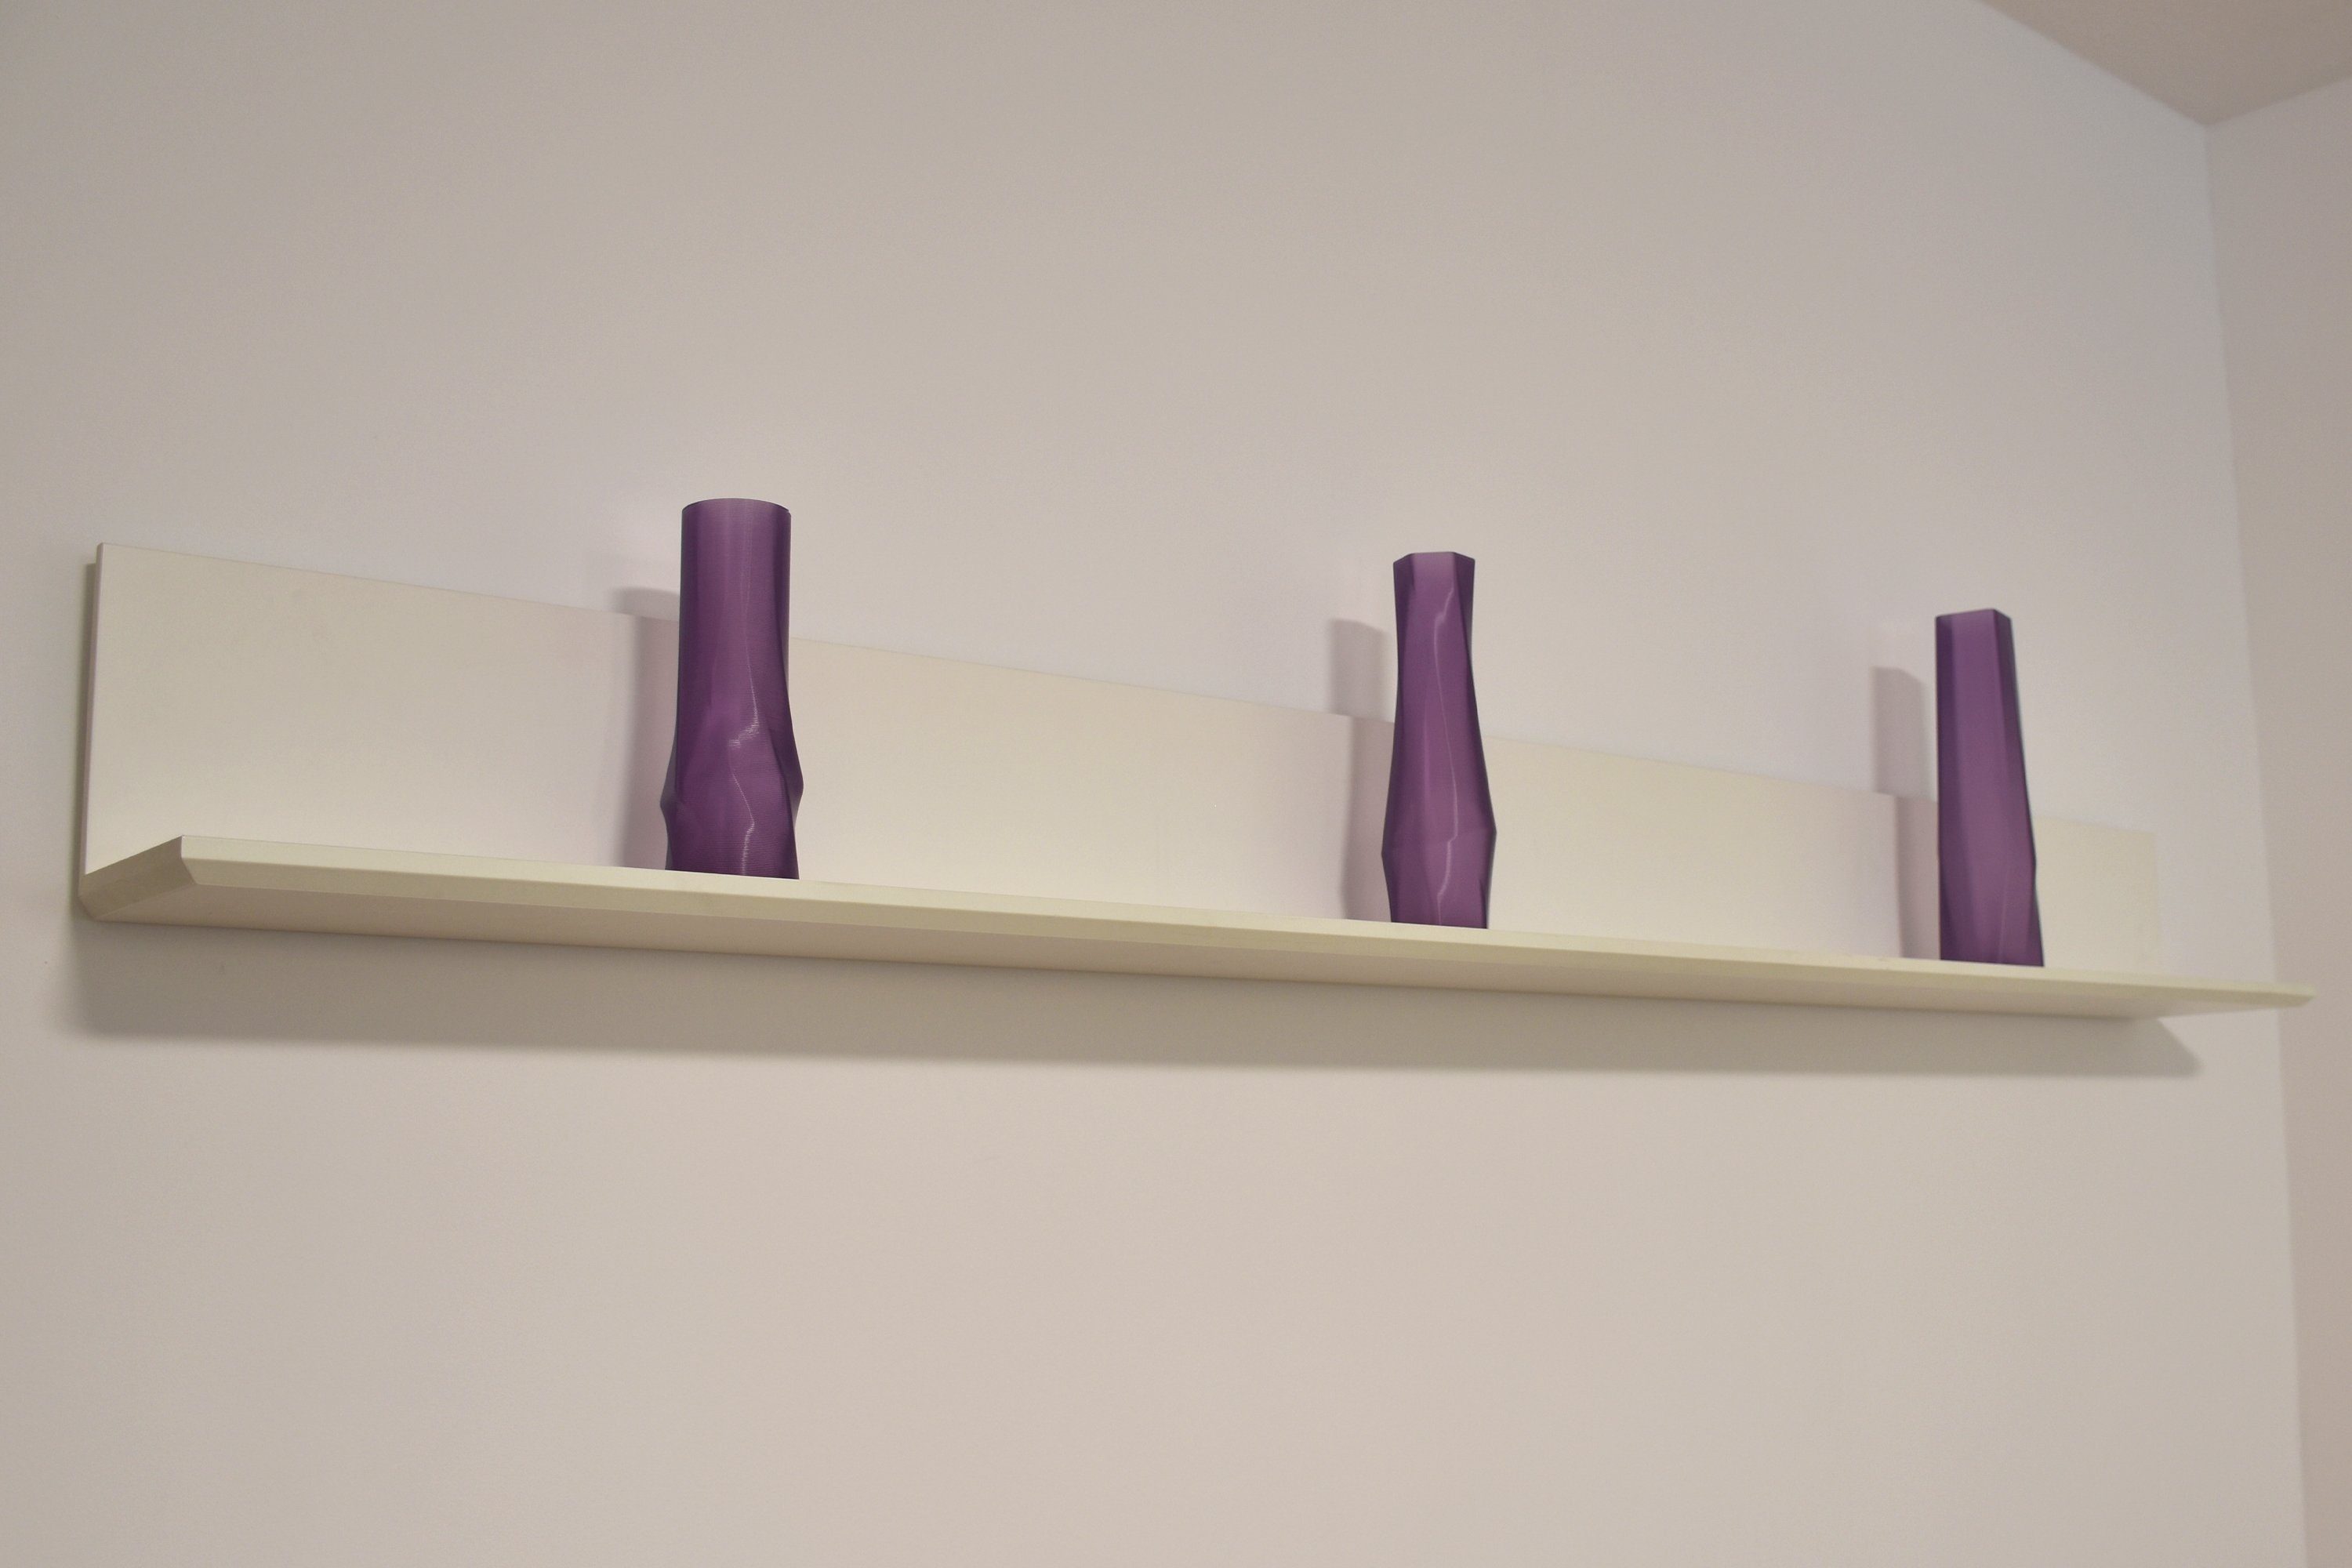 3 Spar-Set, Shapes verschiedenen 3D 100% Struktur (3er Leichte Durchsichtig; (Rillung) Größen), Dekovase, Lila Set, Dekovase 3D-Druck geometrio. - 3D Vasen Decorations Materials Vasen, des innerhalb (deco), 3er in